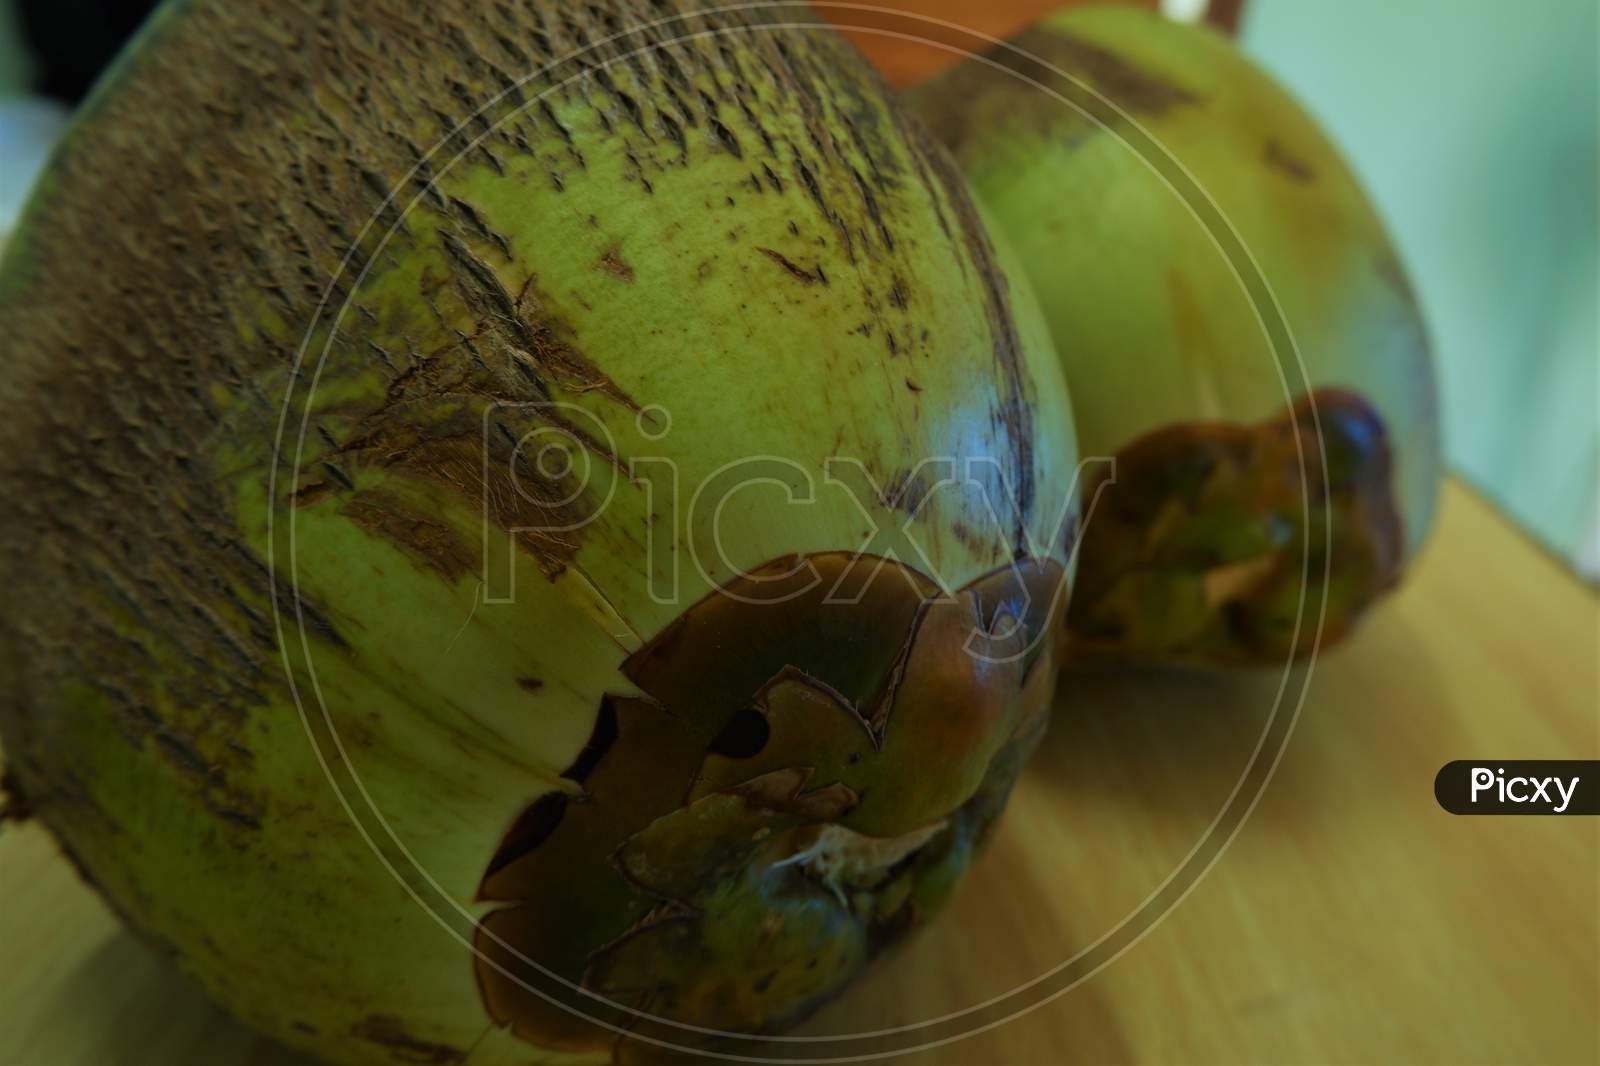 beautiful kerala tender coconut close up